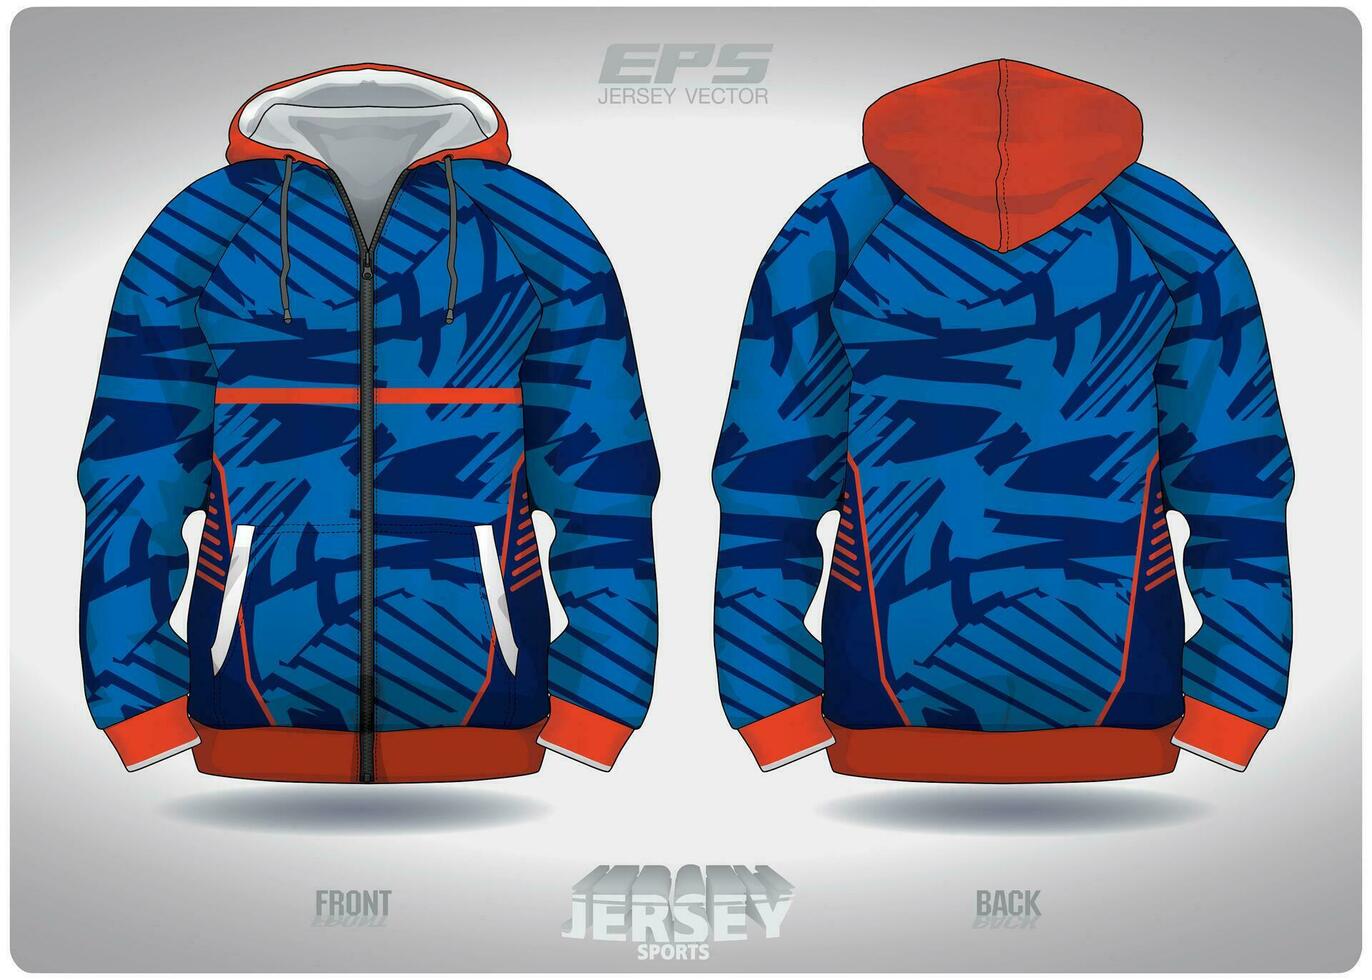 eps jersey sporter skjorta vektor.skog blå med orange band mönster design, illustration, textil- bakgrund för sporter lång ärm luvtröja vektor